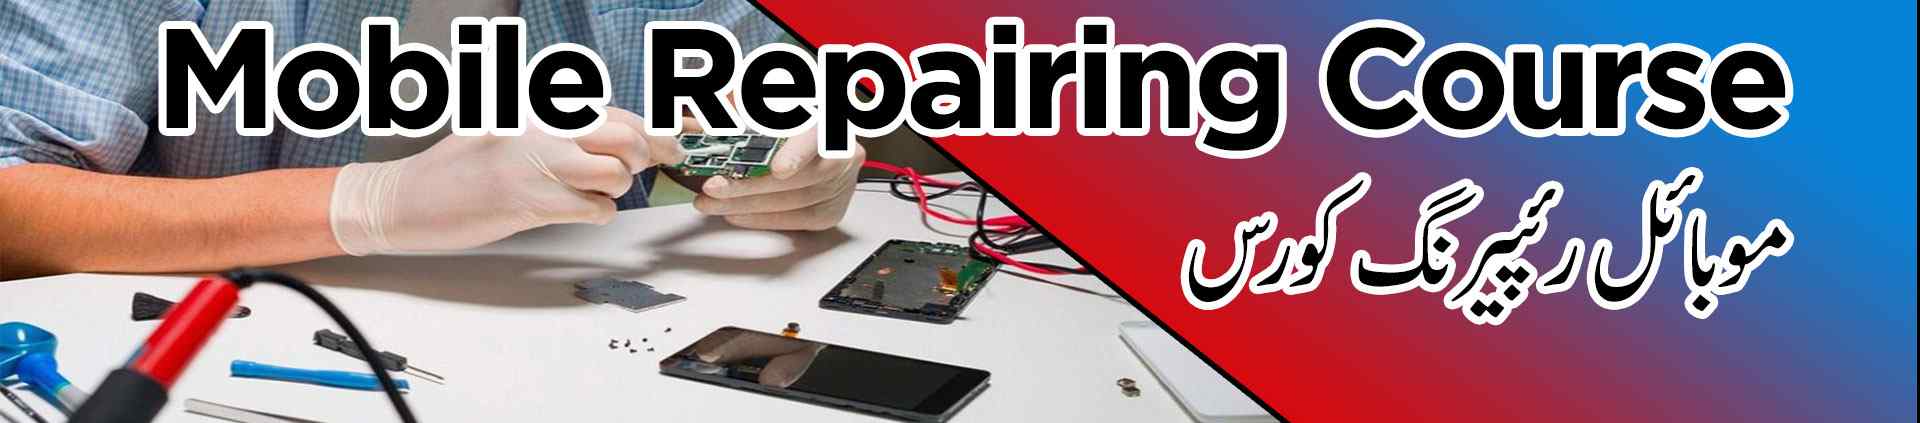 mobile repairing course institute multan